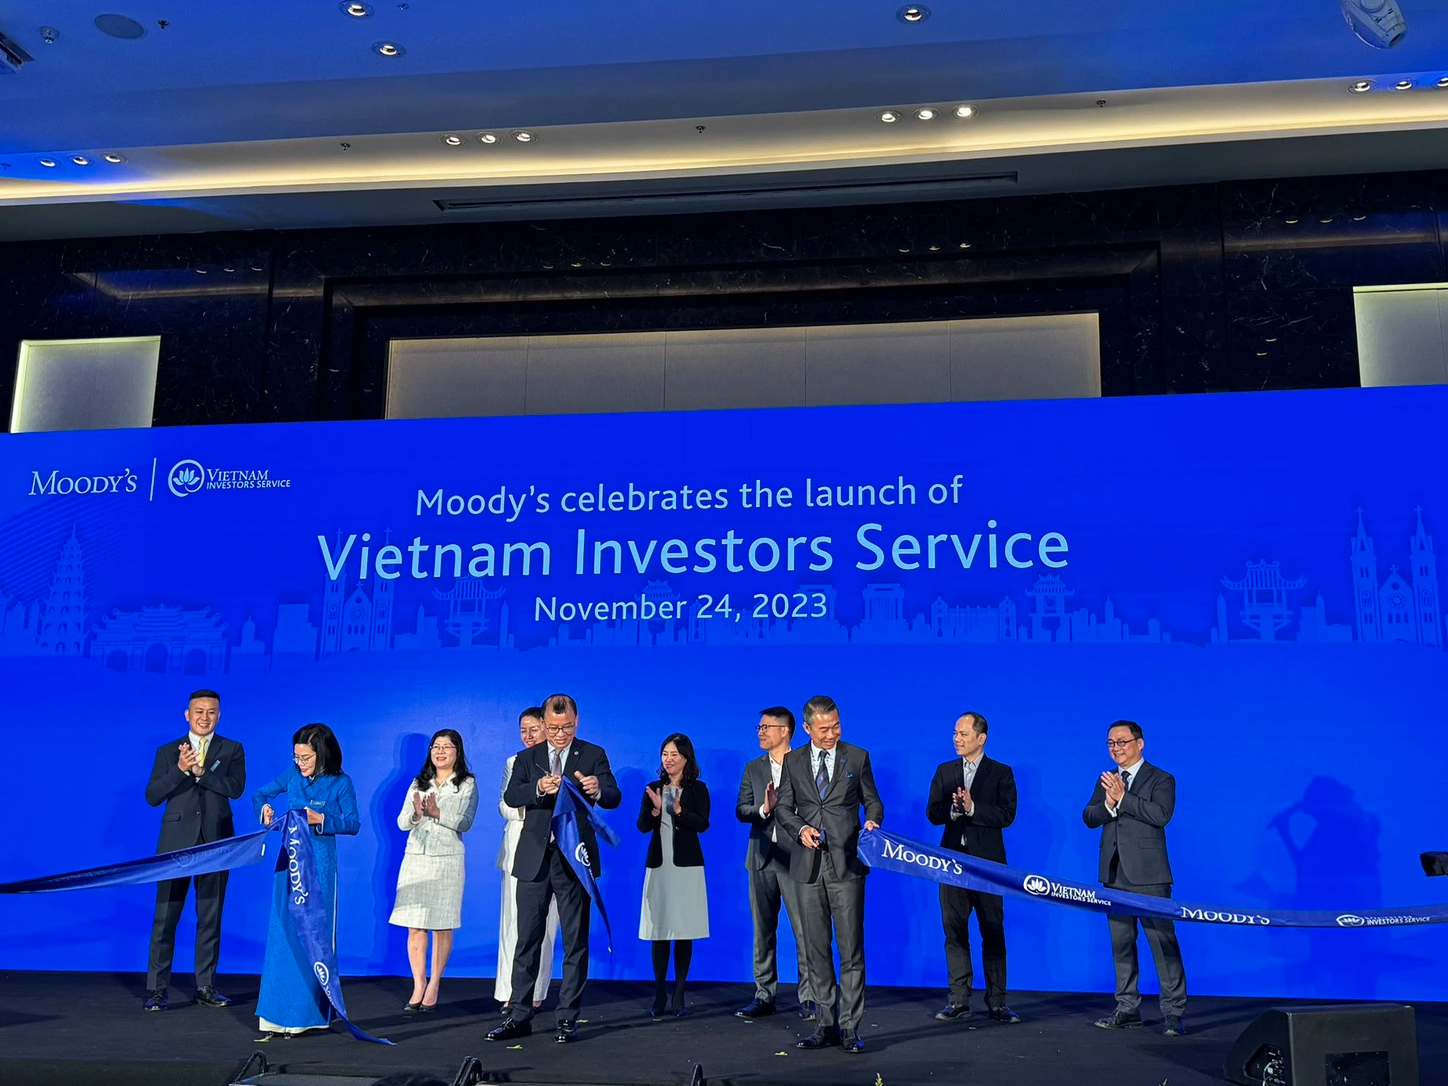 Tổ chức xếp hạng tín nhiệm hàng đầu Moody's trở thành cổ đông lớn của một doanh nghiệp Việt - Ảnh 1.